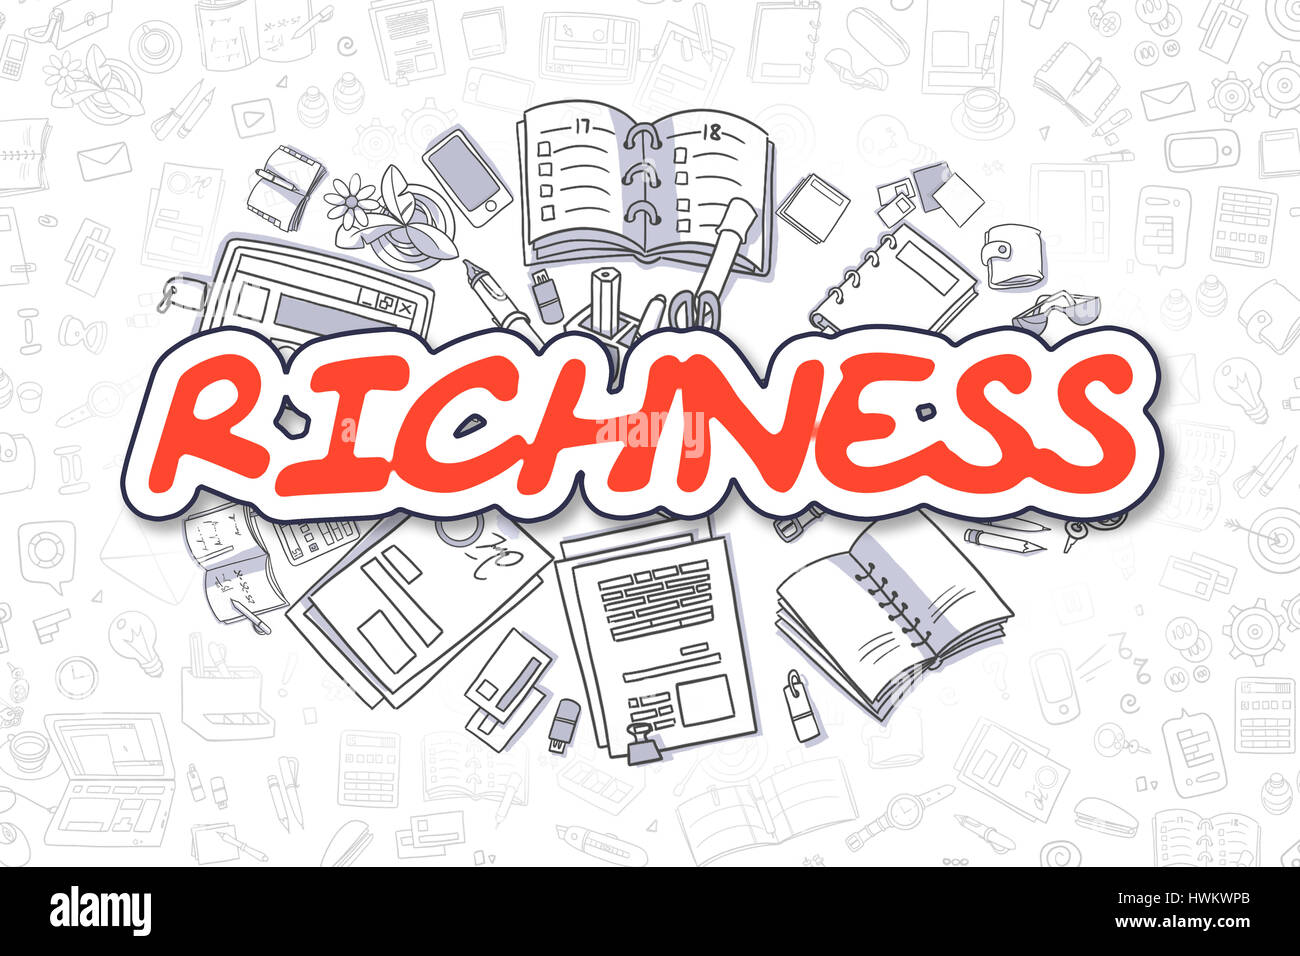 Ricchezza - Doodle testo rosso. Il concetto di business. Foto Stock